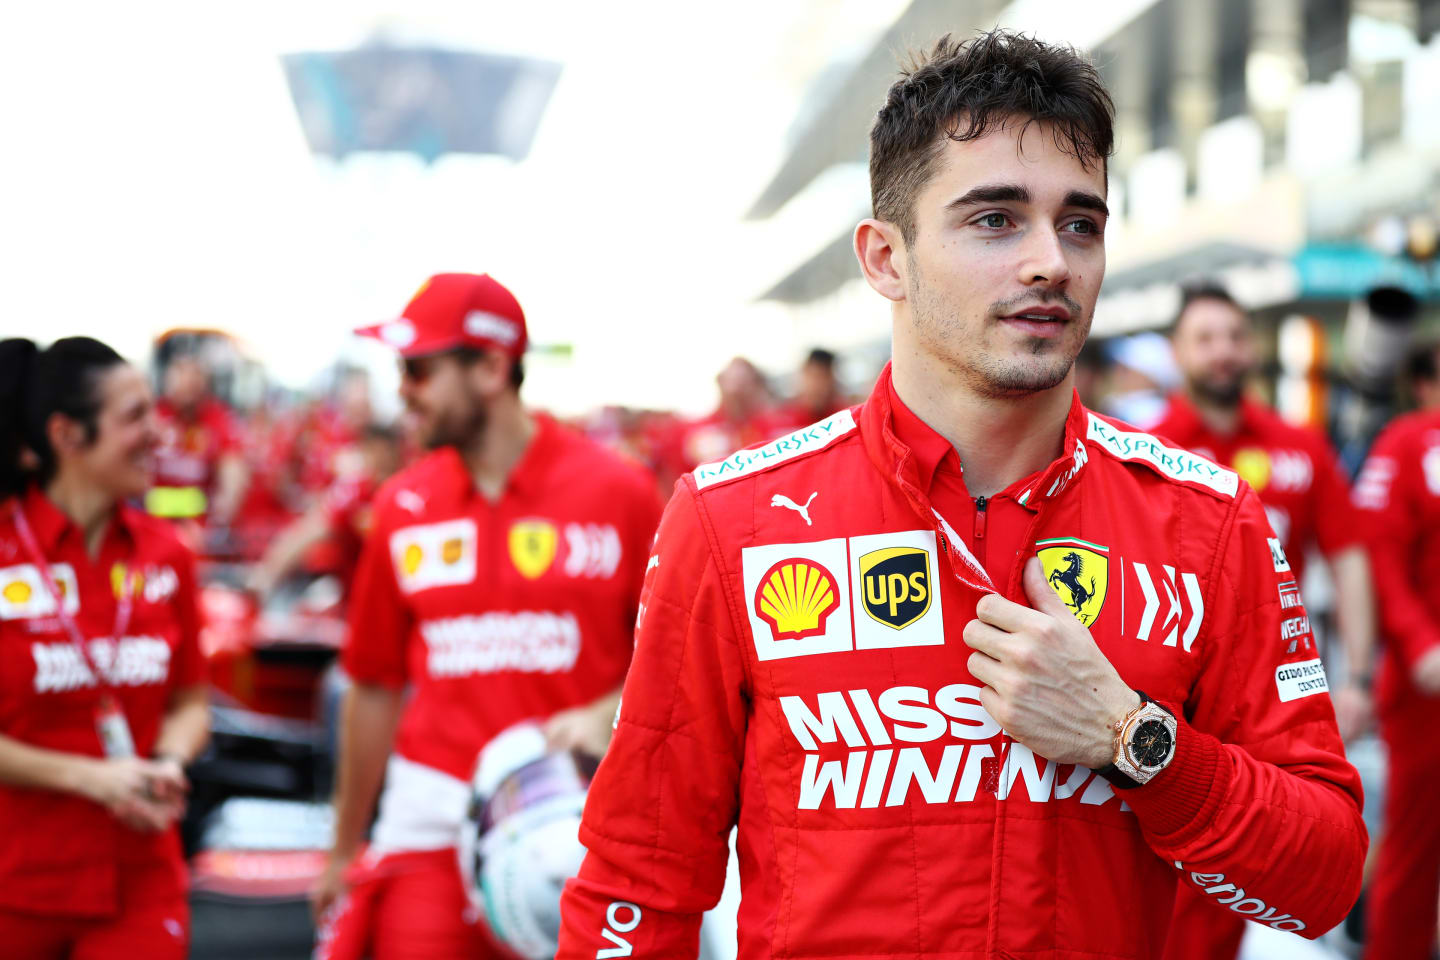 ABU DHABI, UNITED ARAB EMIRATES - NOVEMBER 30: Charles Leclerc of Monaco and Ferrari walks in the